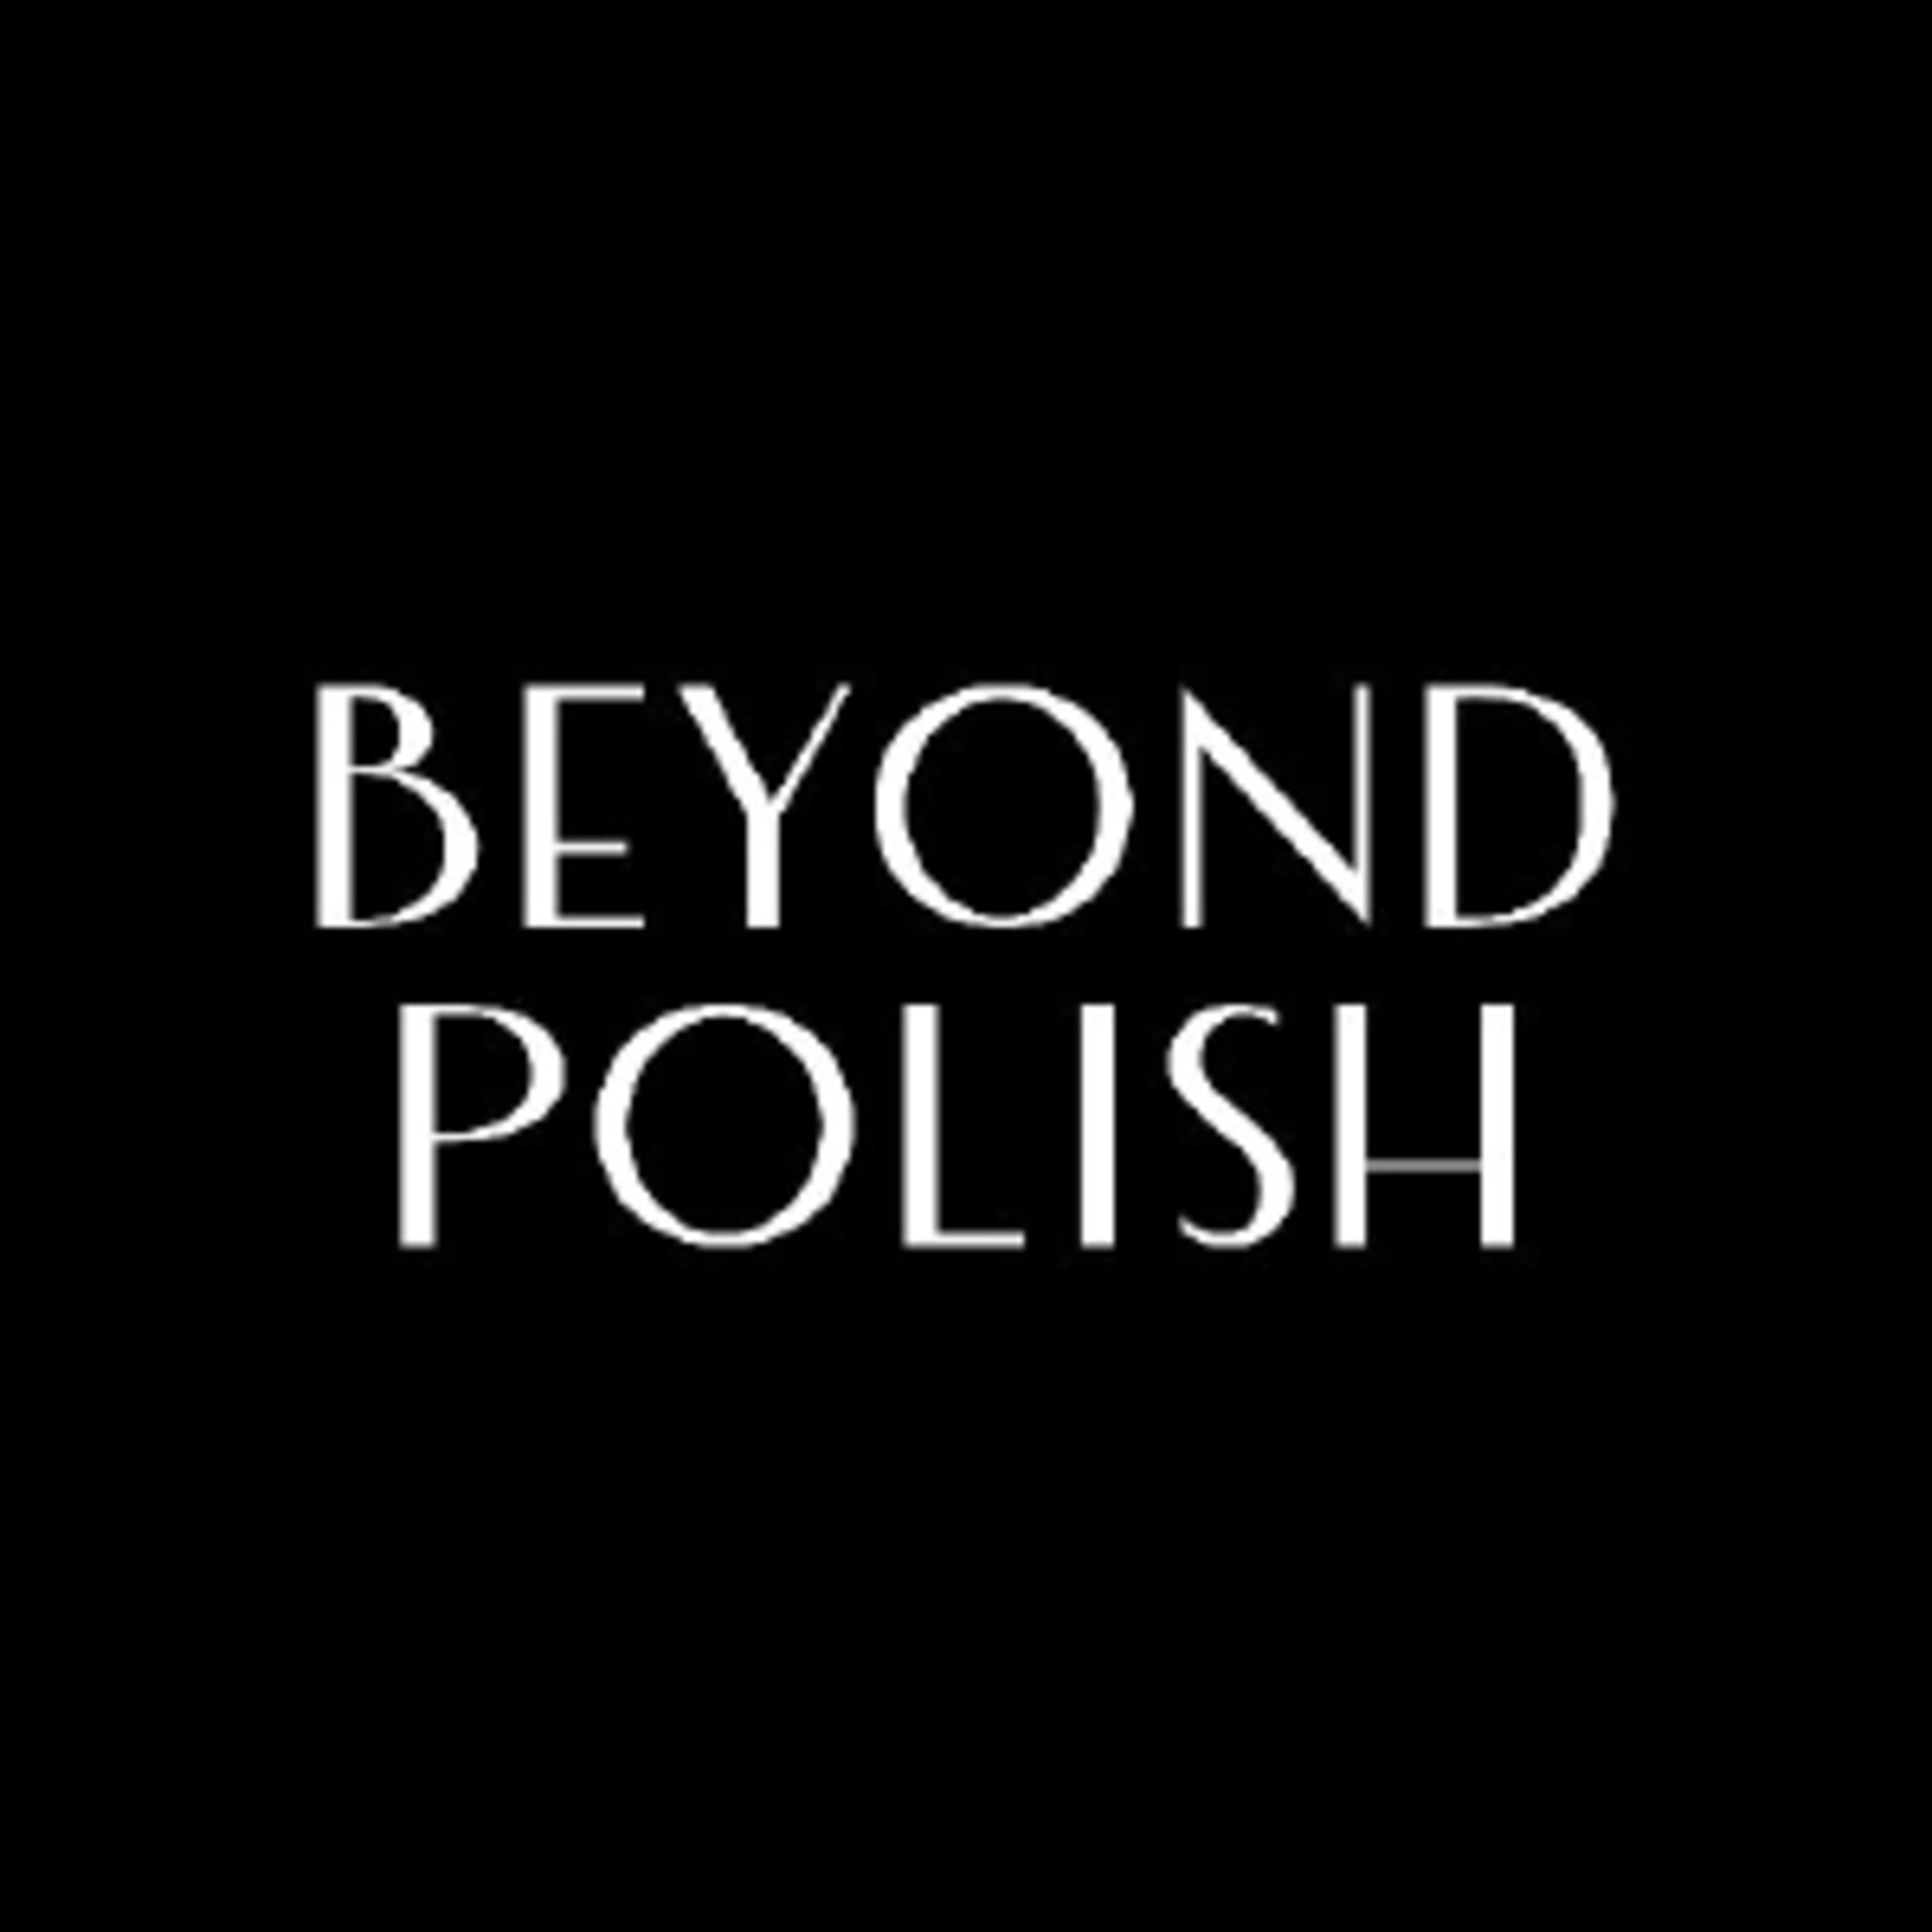 Beyond PolishCode